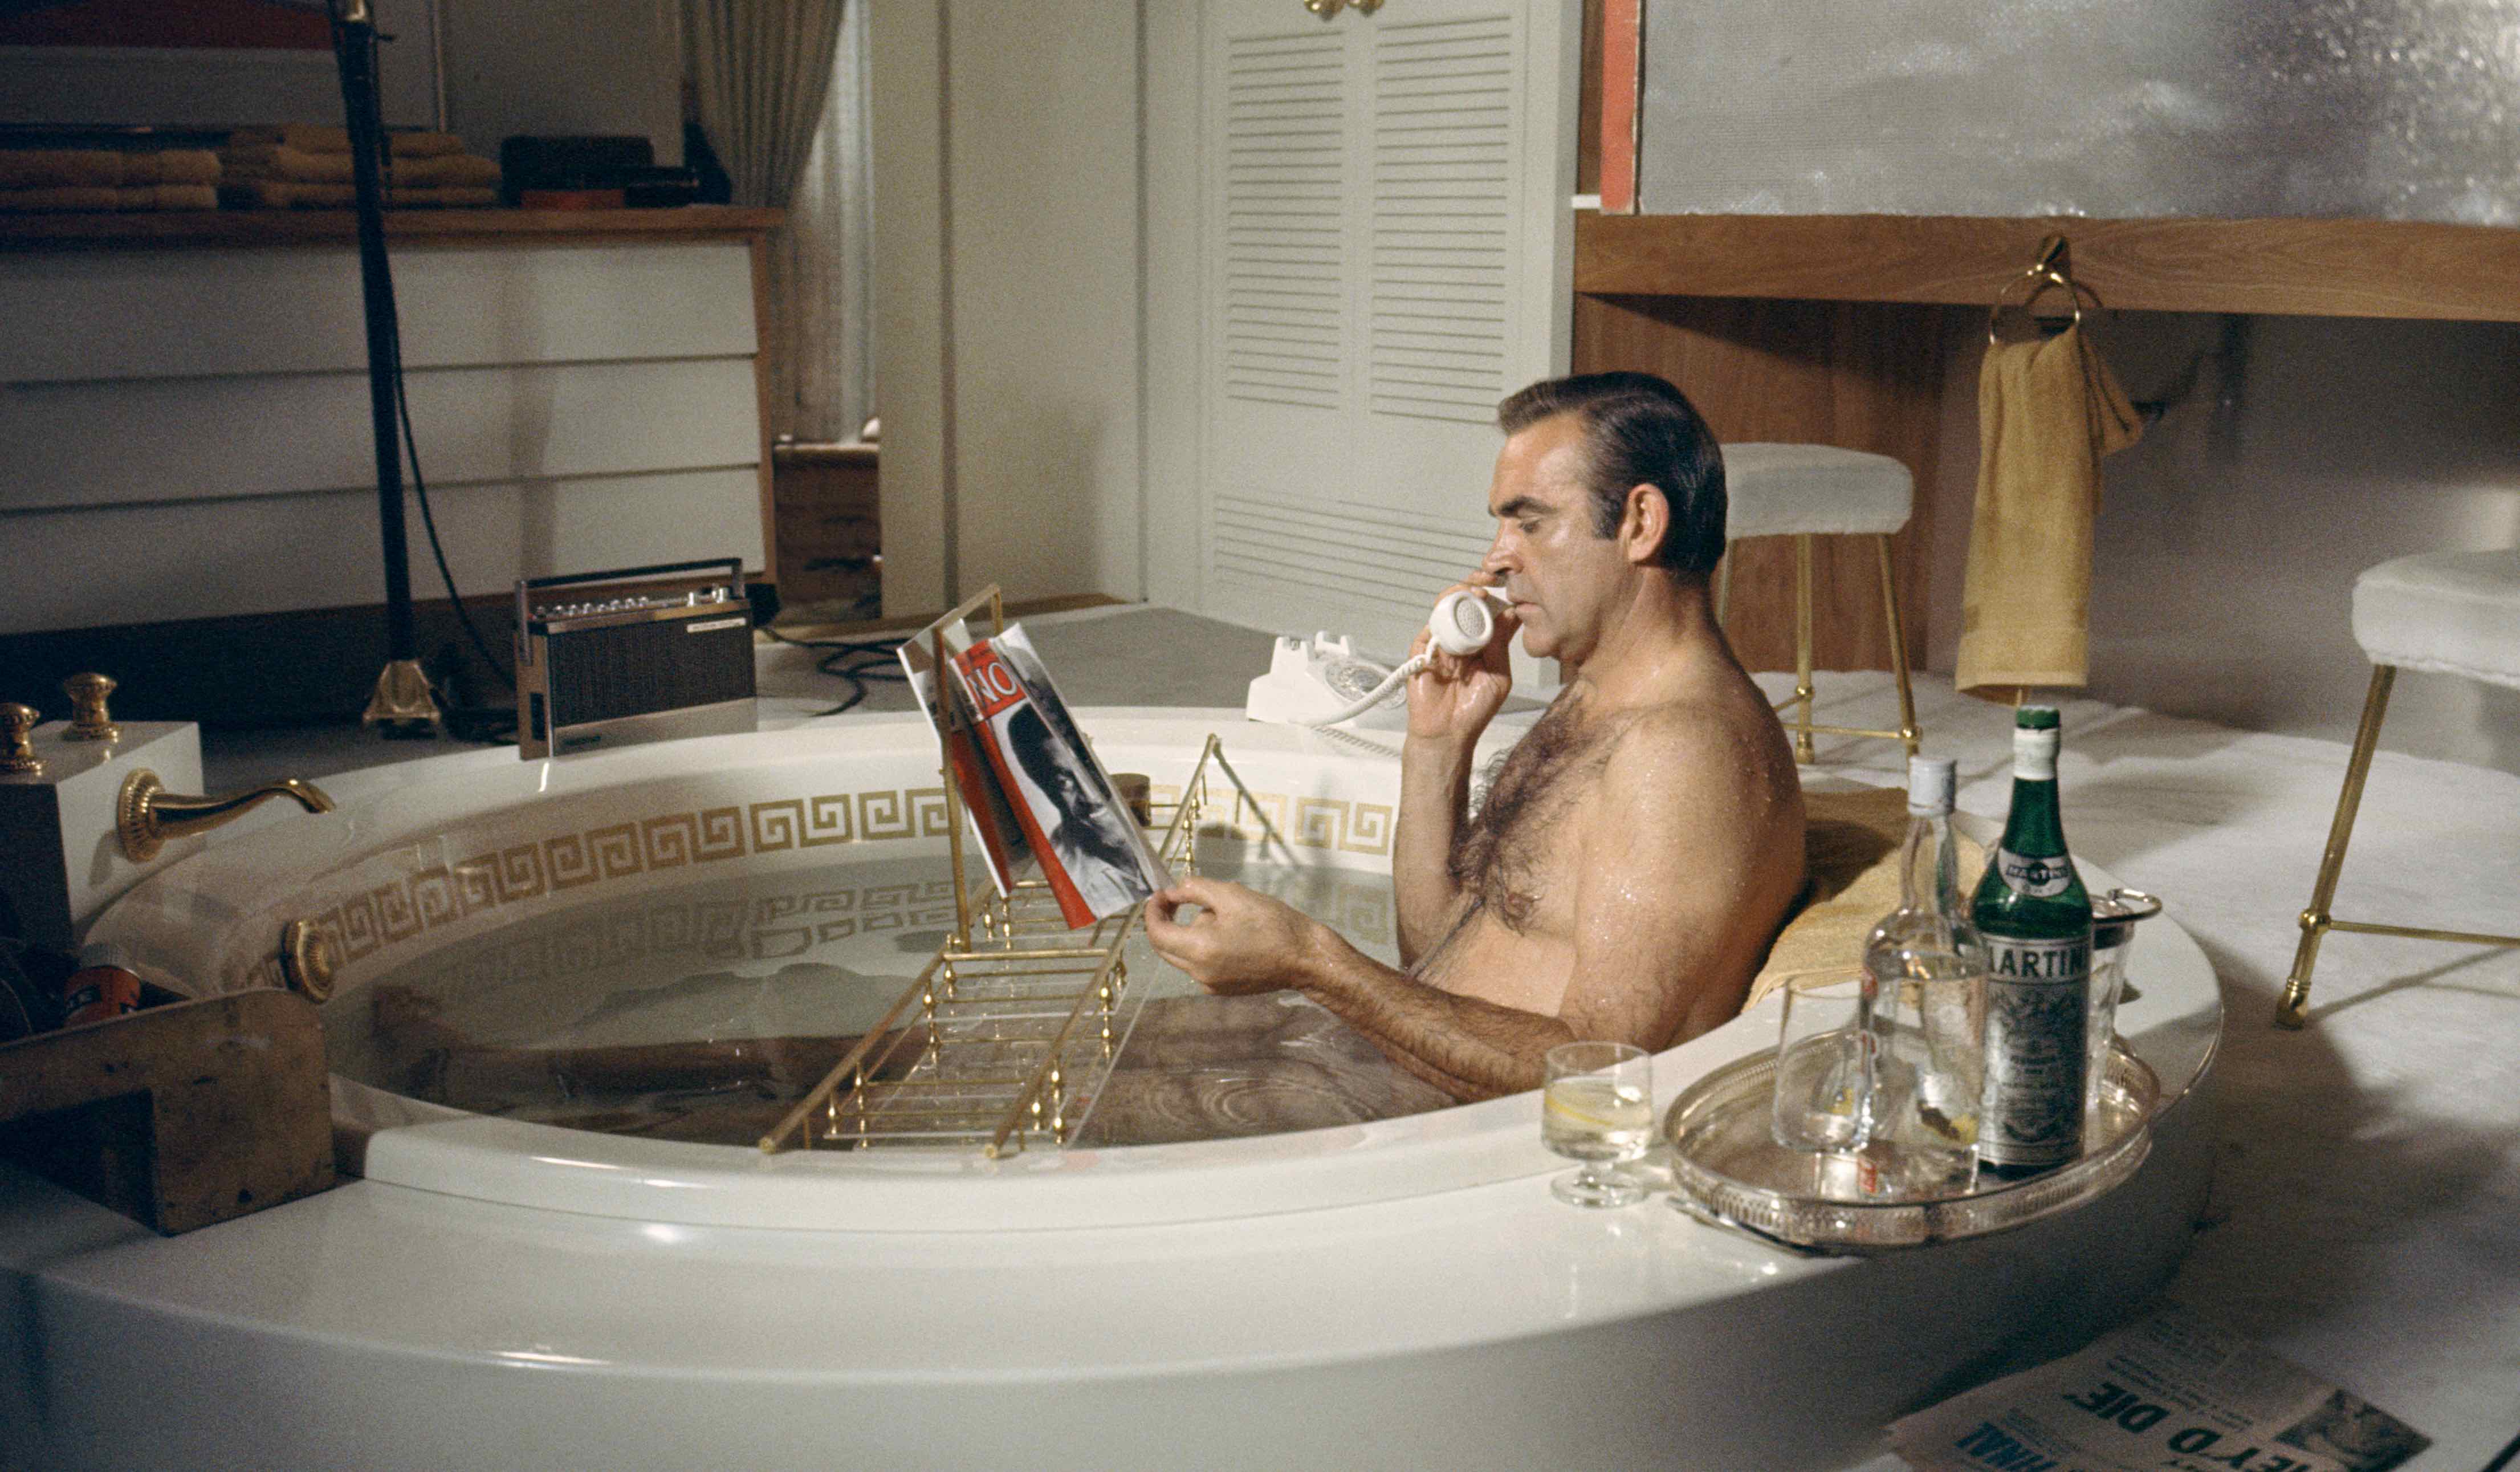 Sean Connery nimmt sich eine Auszeit von James Bond im Bad